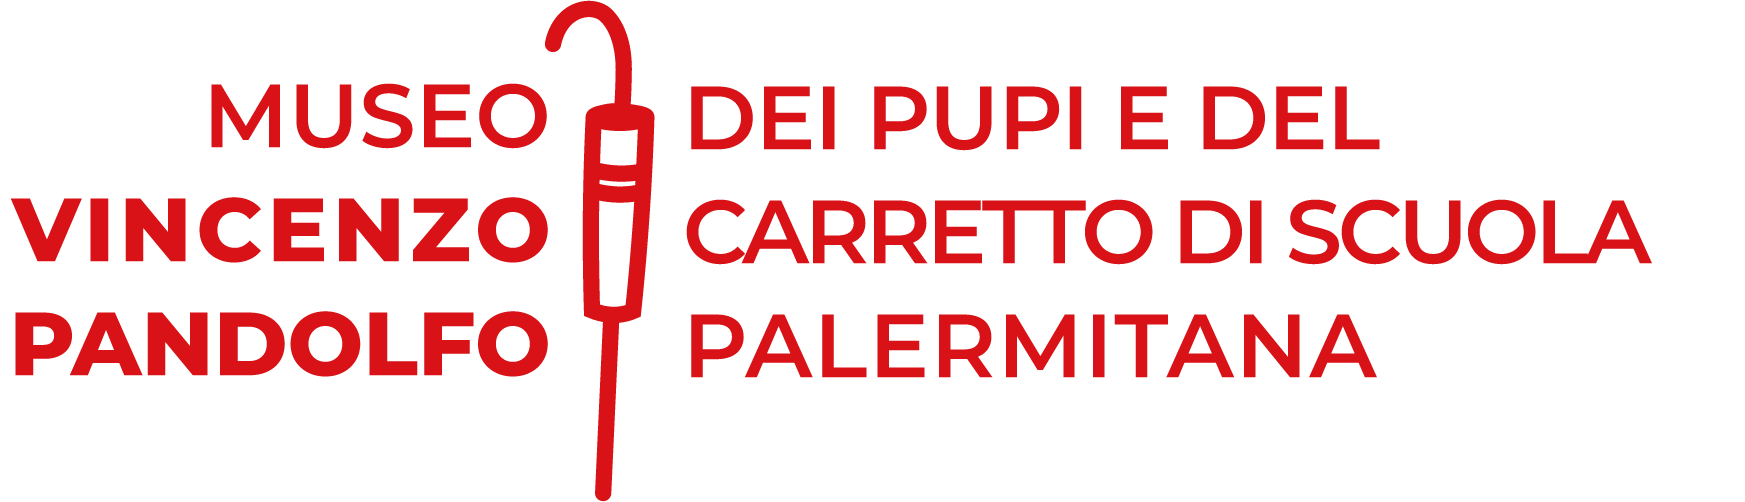 Logo rosso Museo dei pupi e del carretto di scuola palermitana Vincenzo Pandolfo